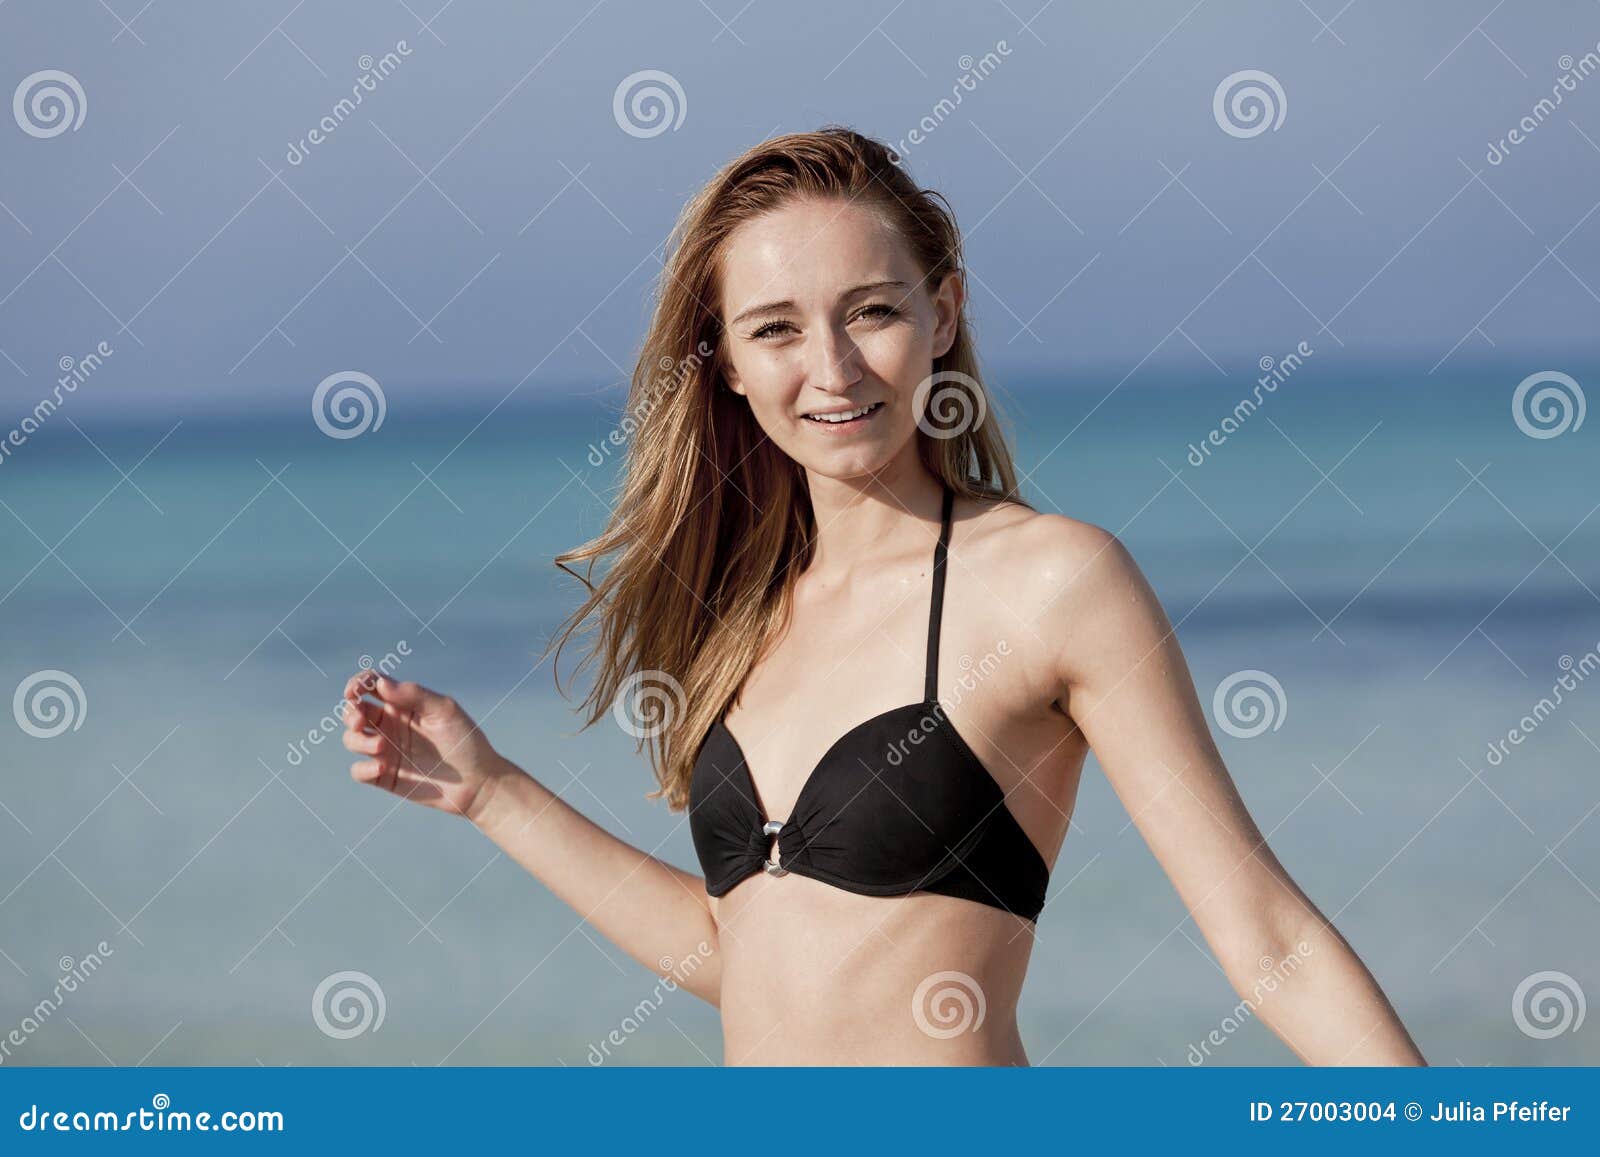 Young bikini girls nude beach